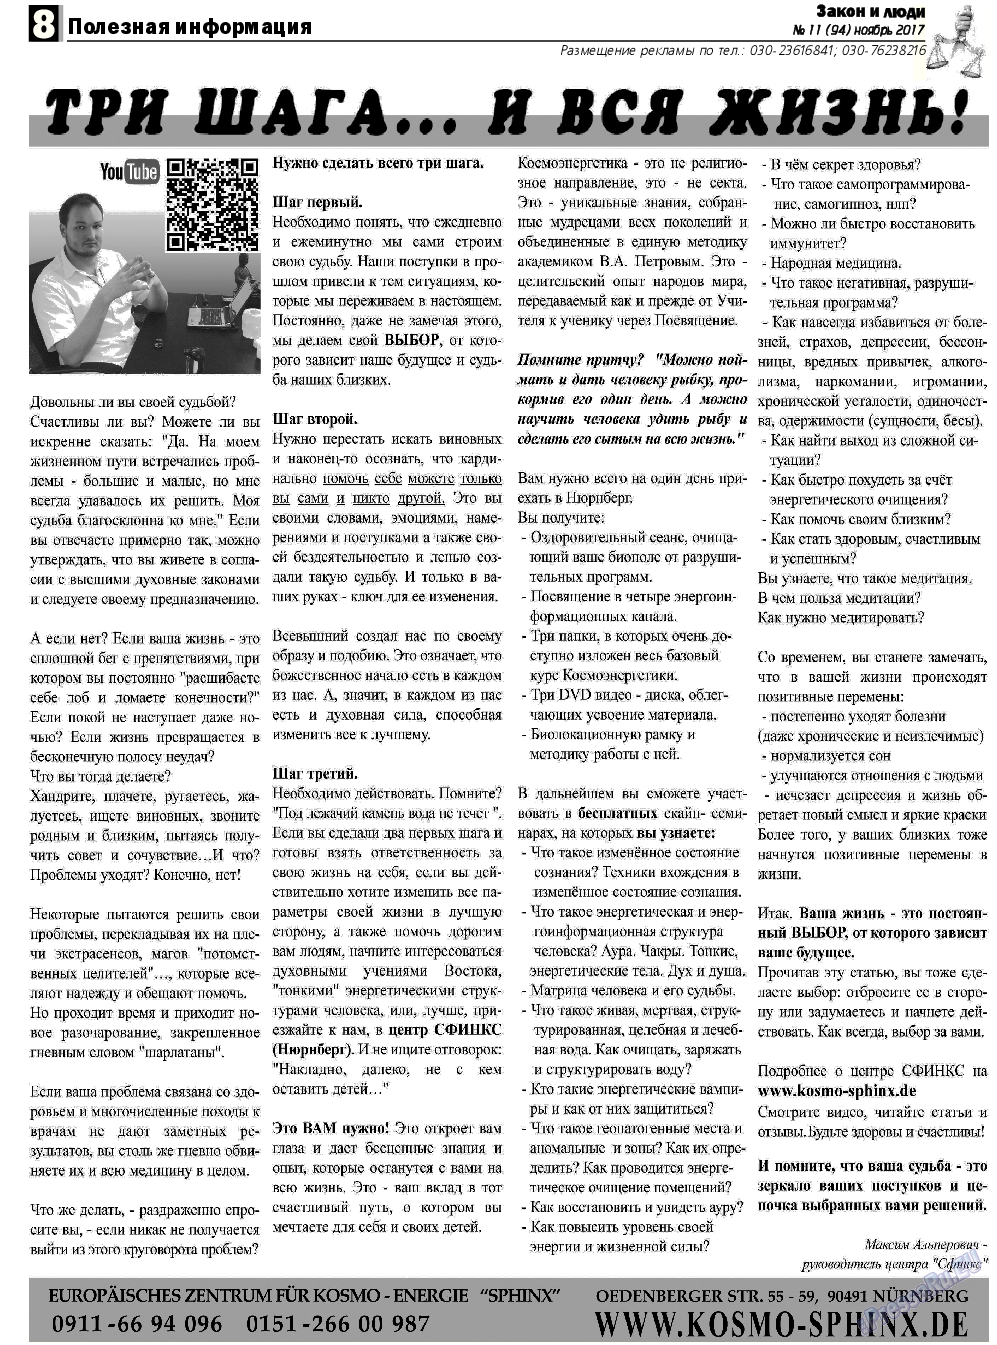 Закон и люди, газета. 2017 №11 стр.8